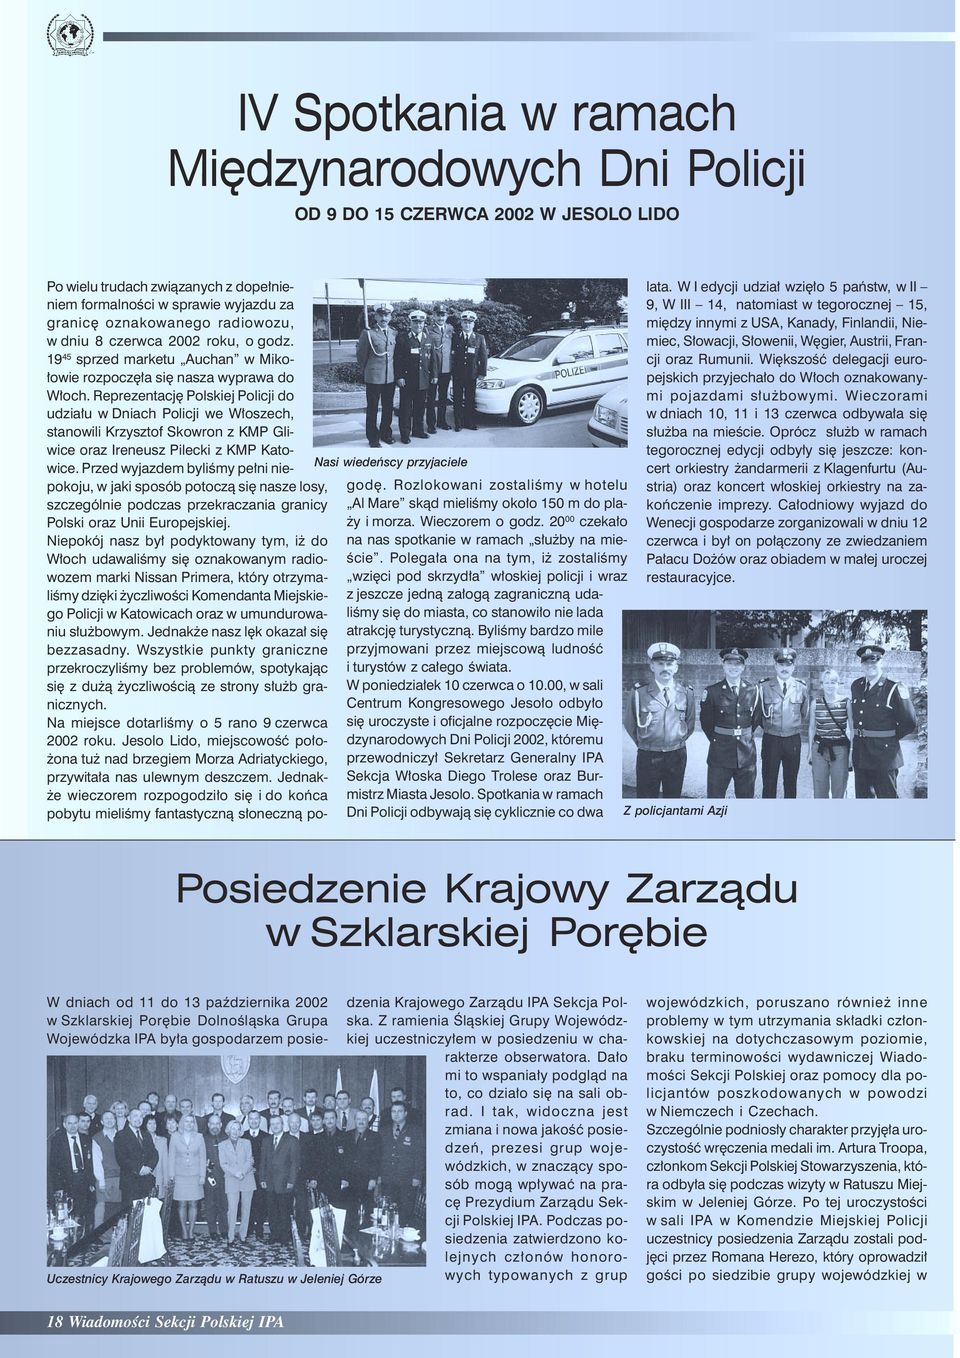 Reprezentację Polskiej Policji do udziału w Dniach Policji we Włoszech, stanowili Krzysztof Skowron z KMP Gliwice oraz Ireneusz Pilecki z KMP Katowice.